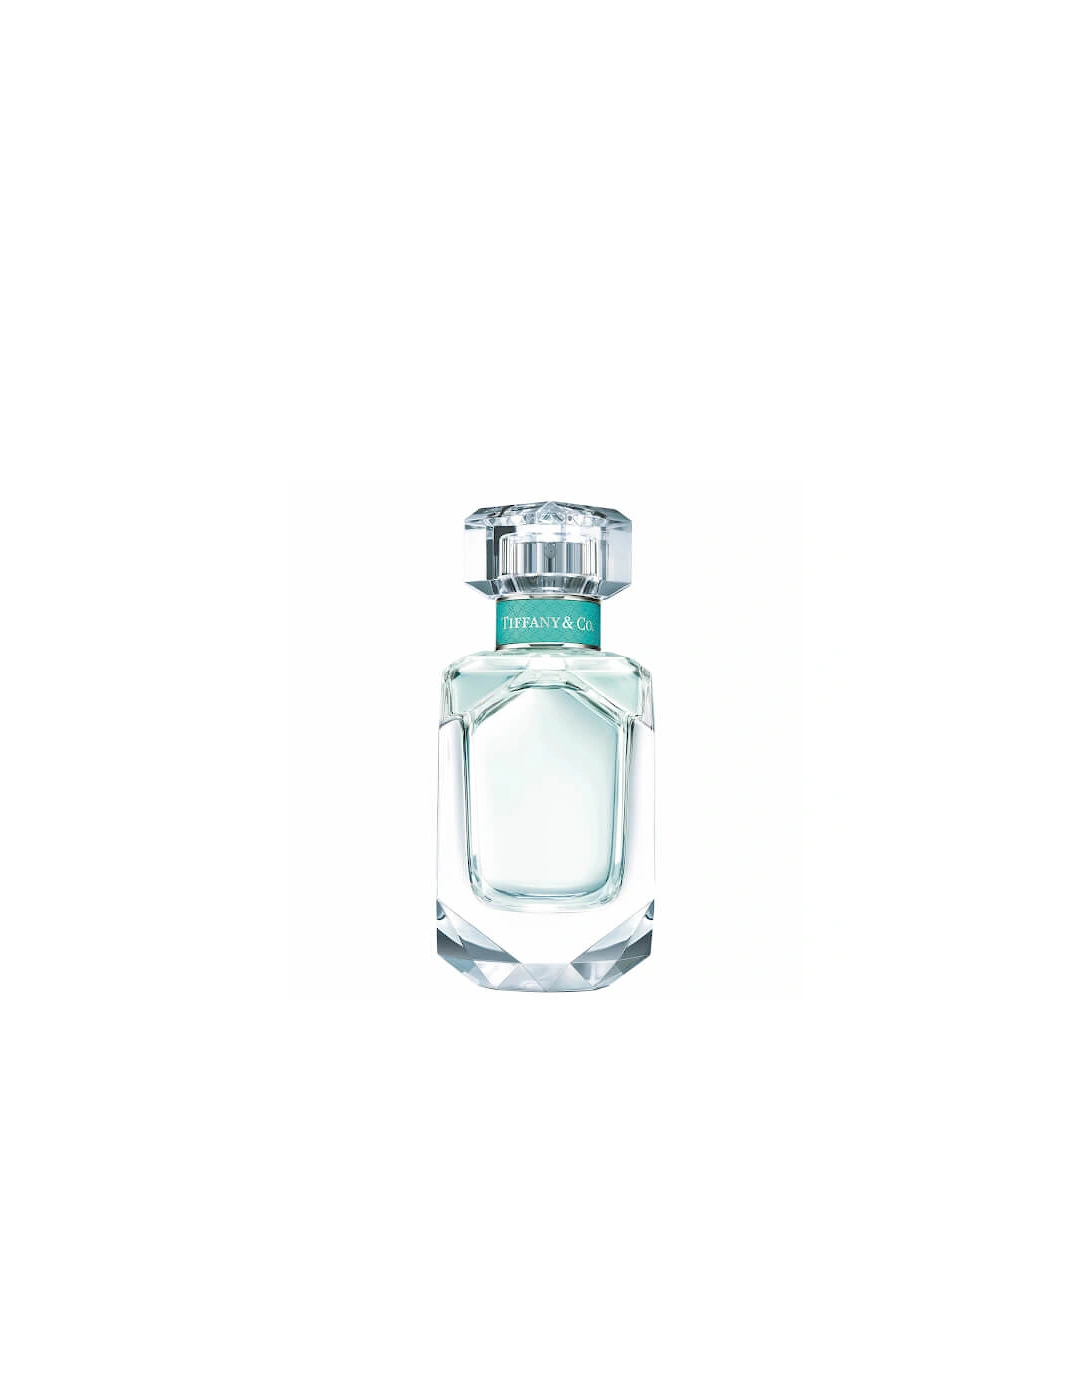 Tiffany & Co. Eau de Parfum for Her 50ml, 2 of 1